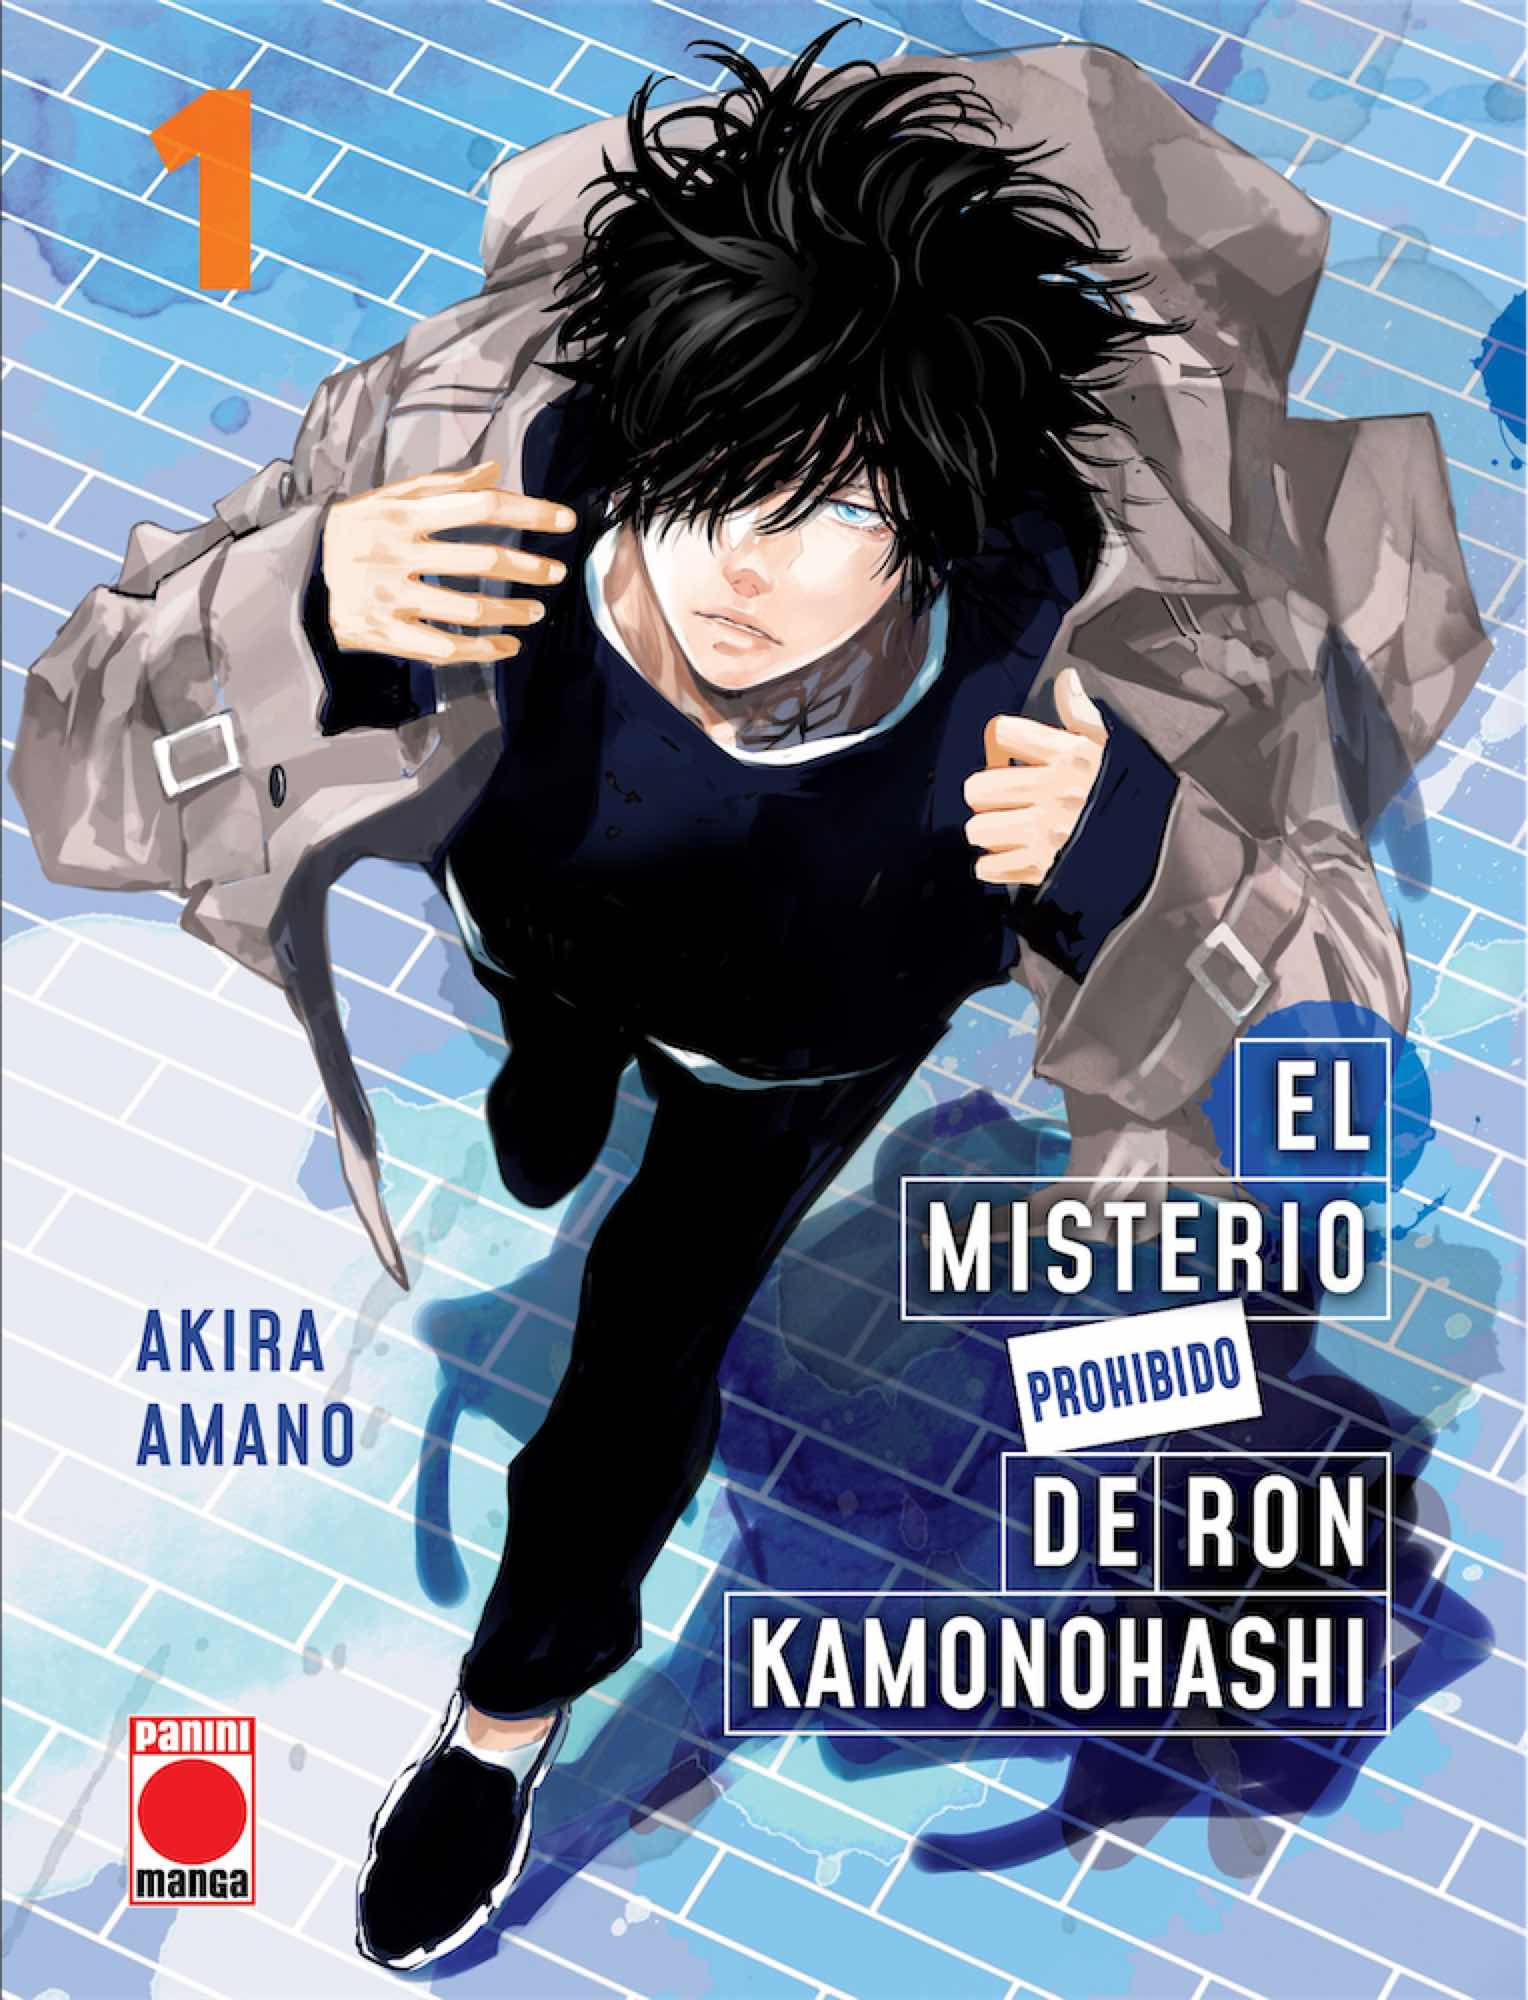 EL MISTERIO PROHIBIDO DE RON KAMONOHASHI 01 (PORTADA ALTERNATIVA)